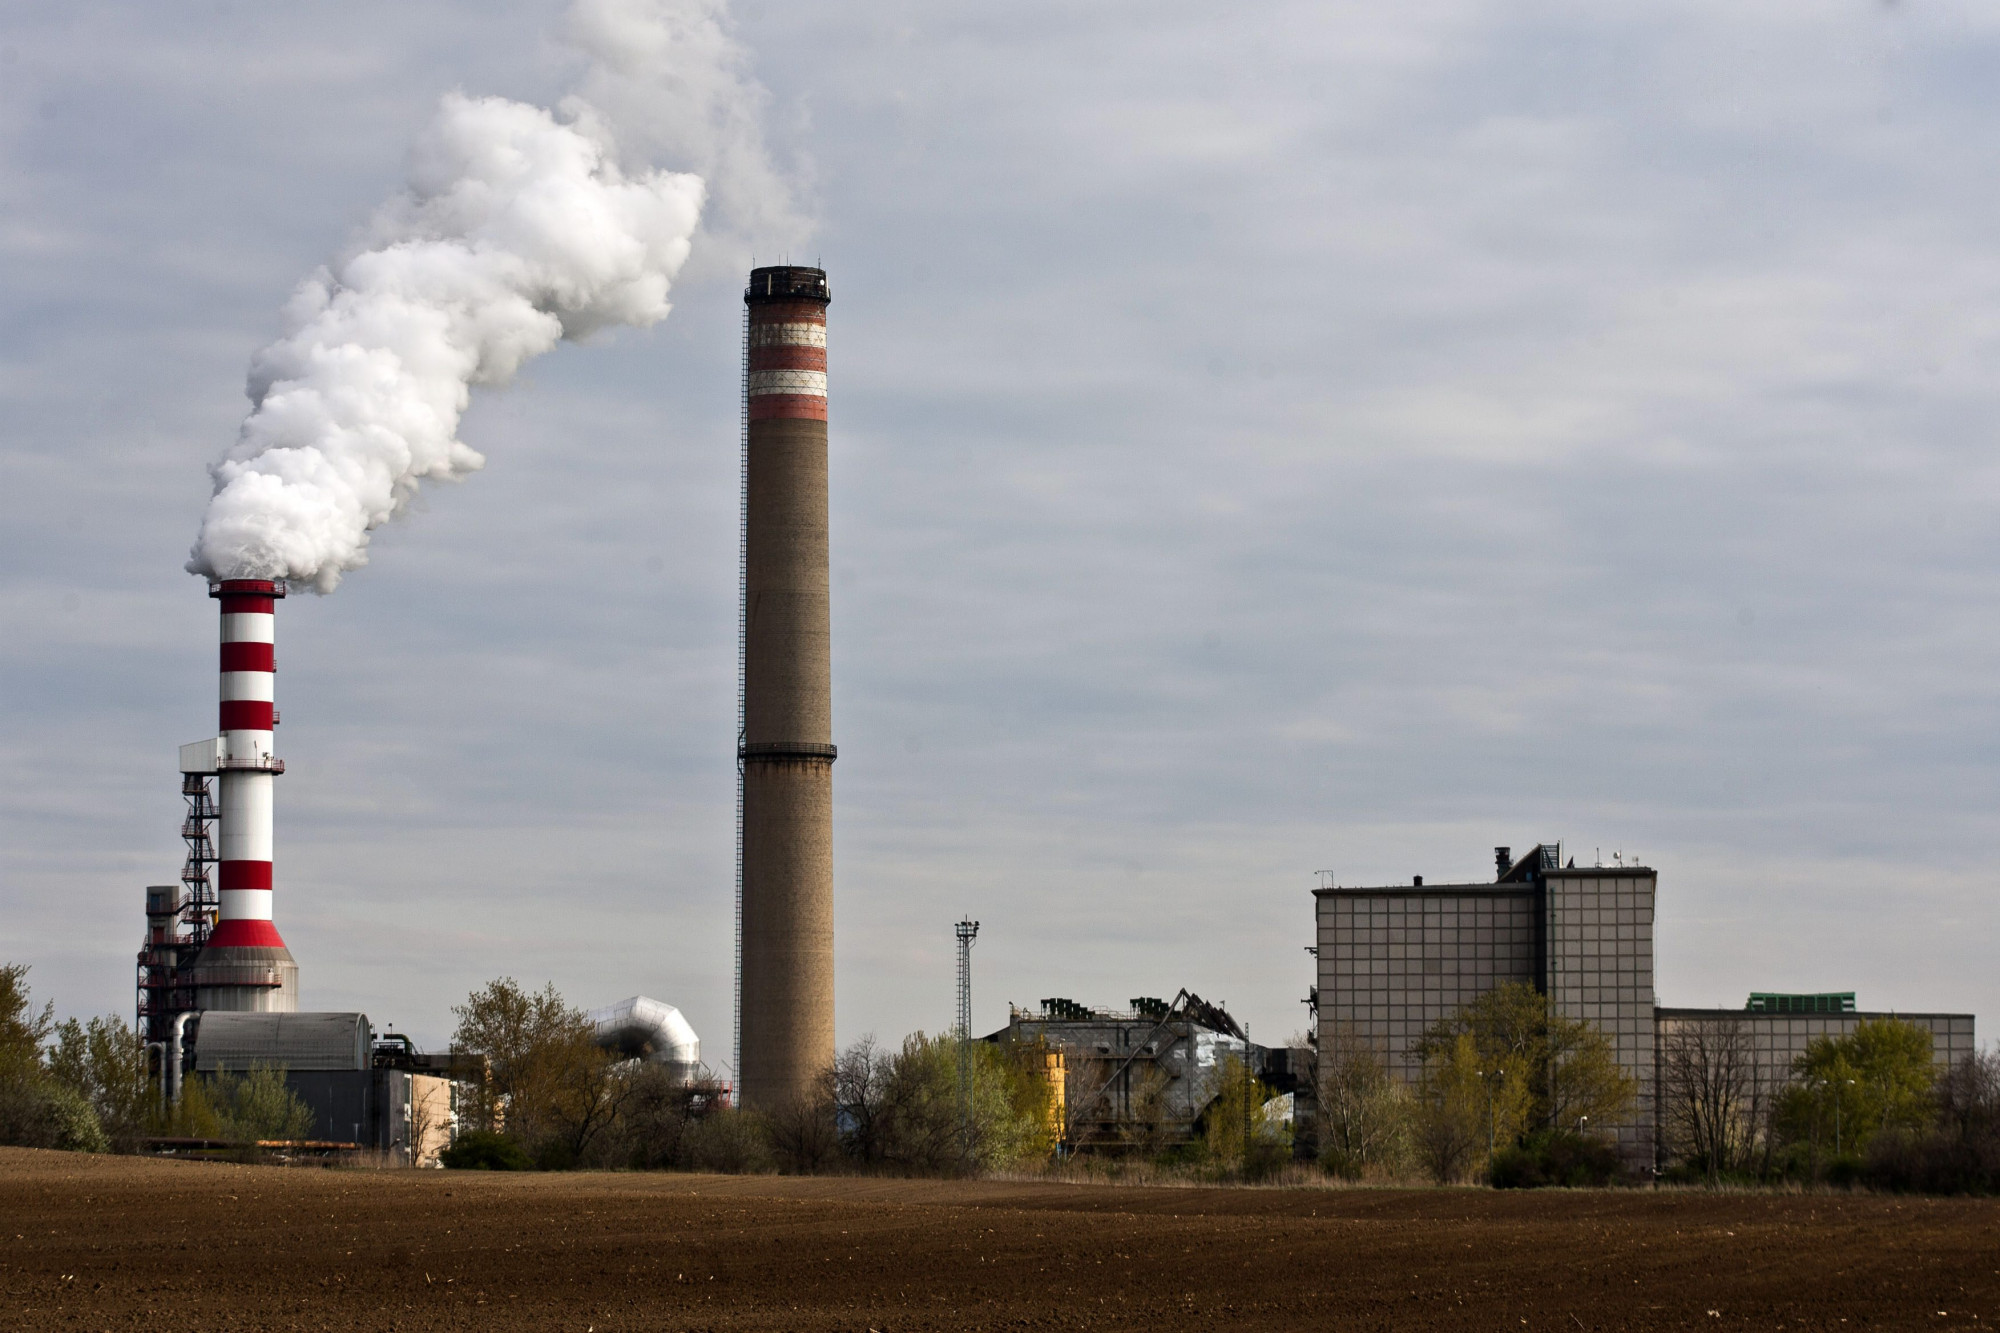 Magyarország tele van föld alatti szén-dioxid-tárolókkal, már csak használni kellene őket